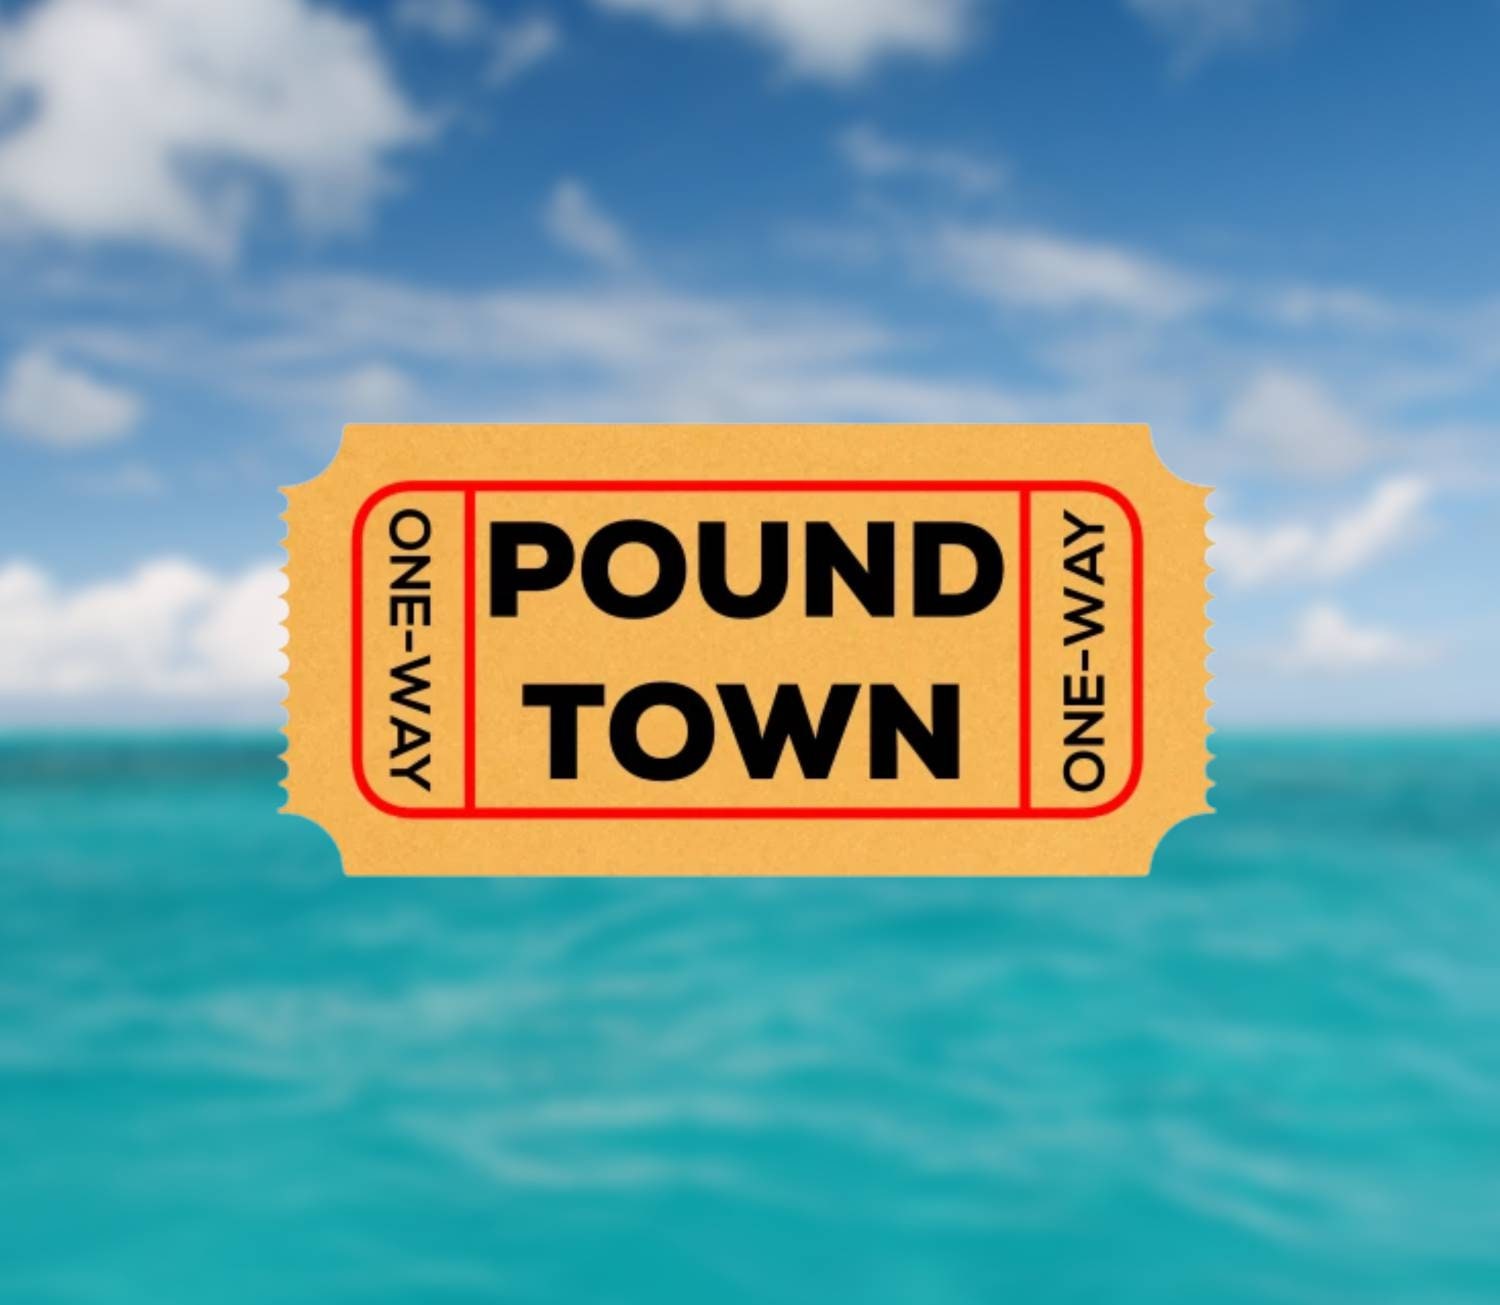 Pound town gif